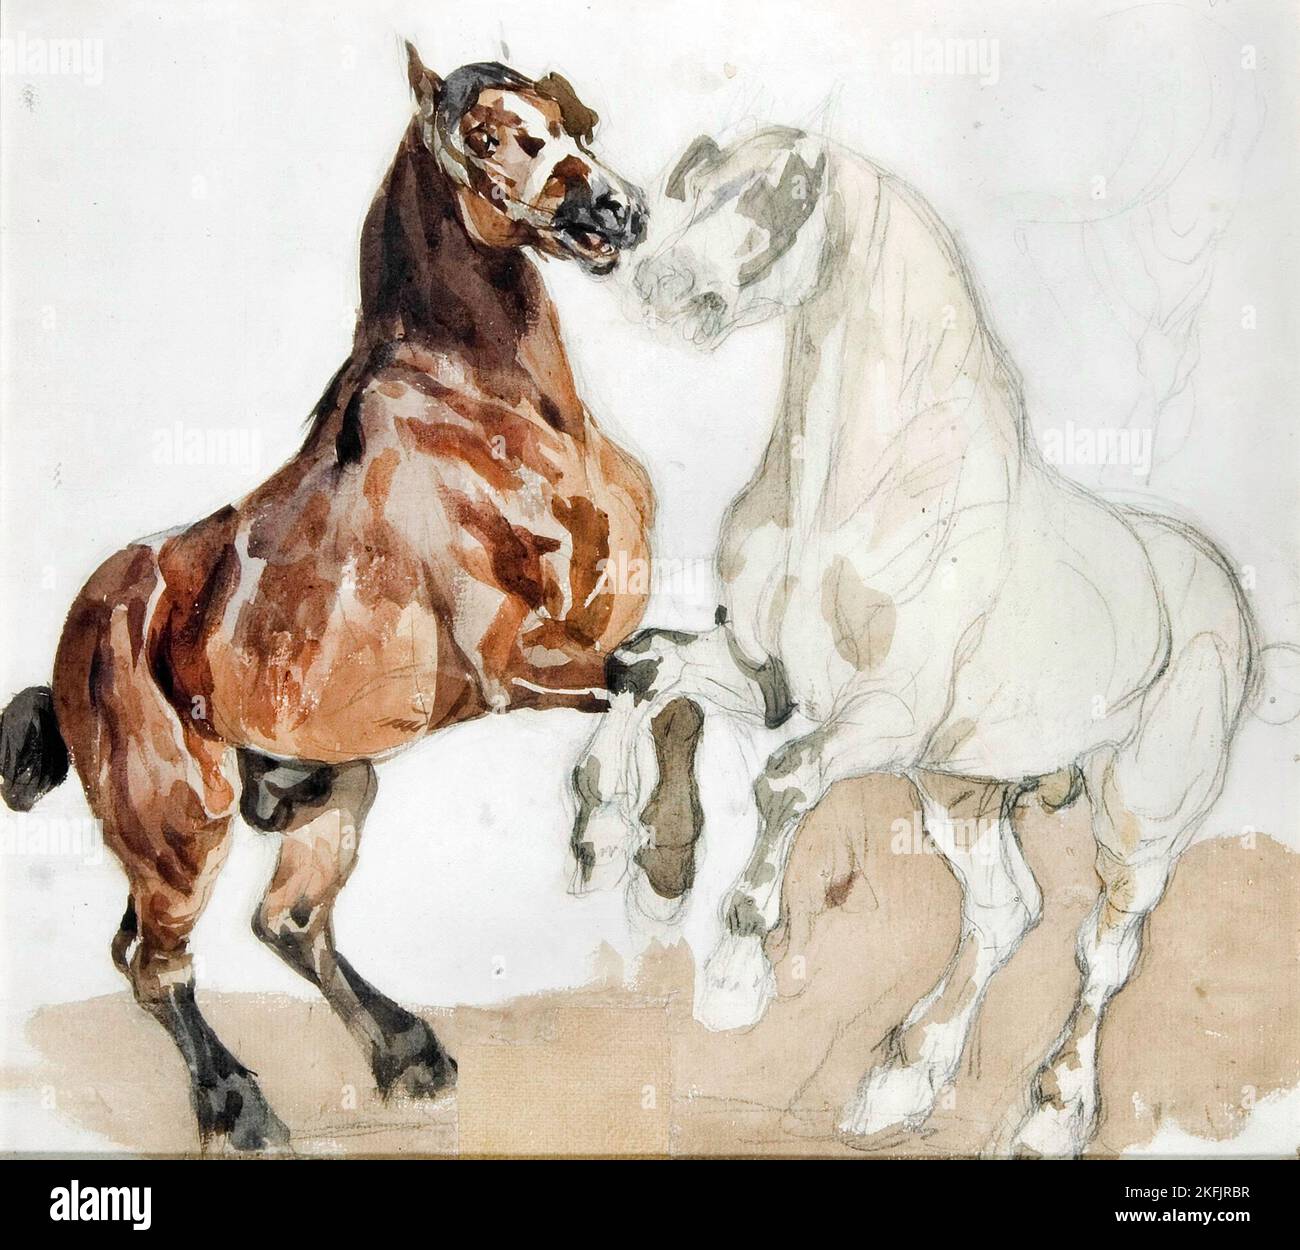 Piotr Michalowski; chevaux; aquarelle; Musée d'art de Lodz, Pologne. Banque D'Images